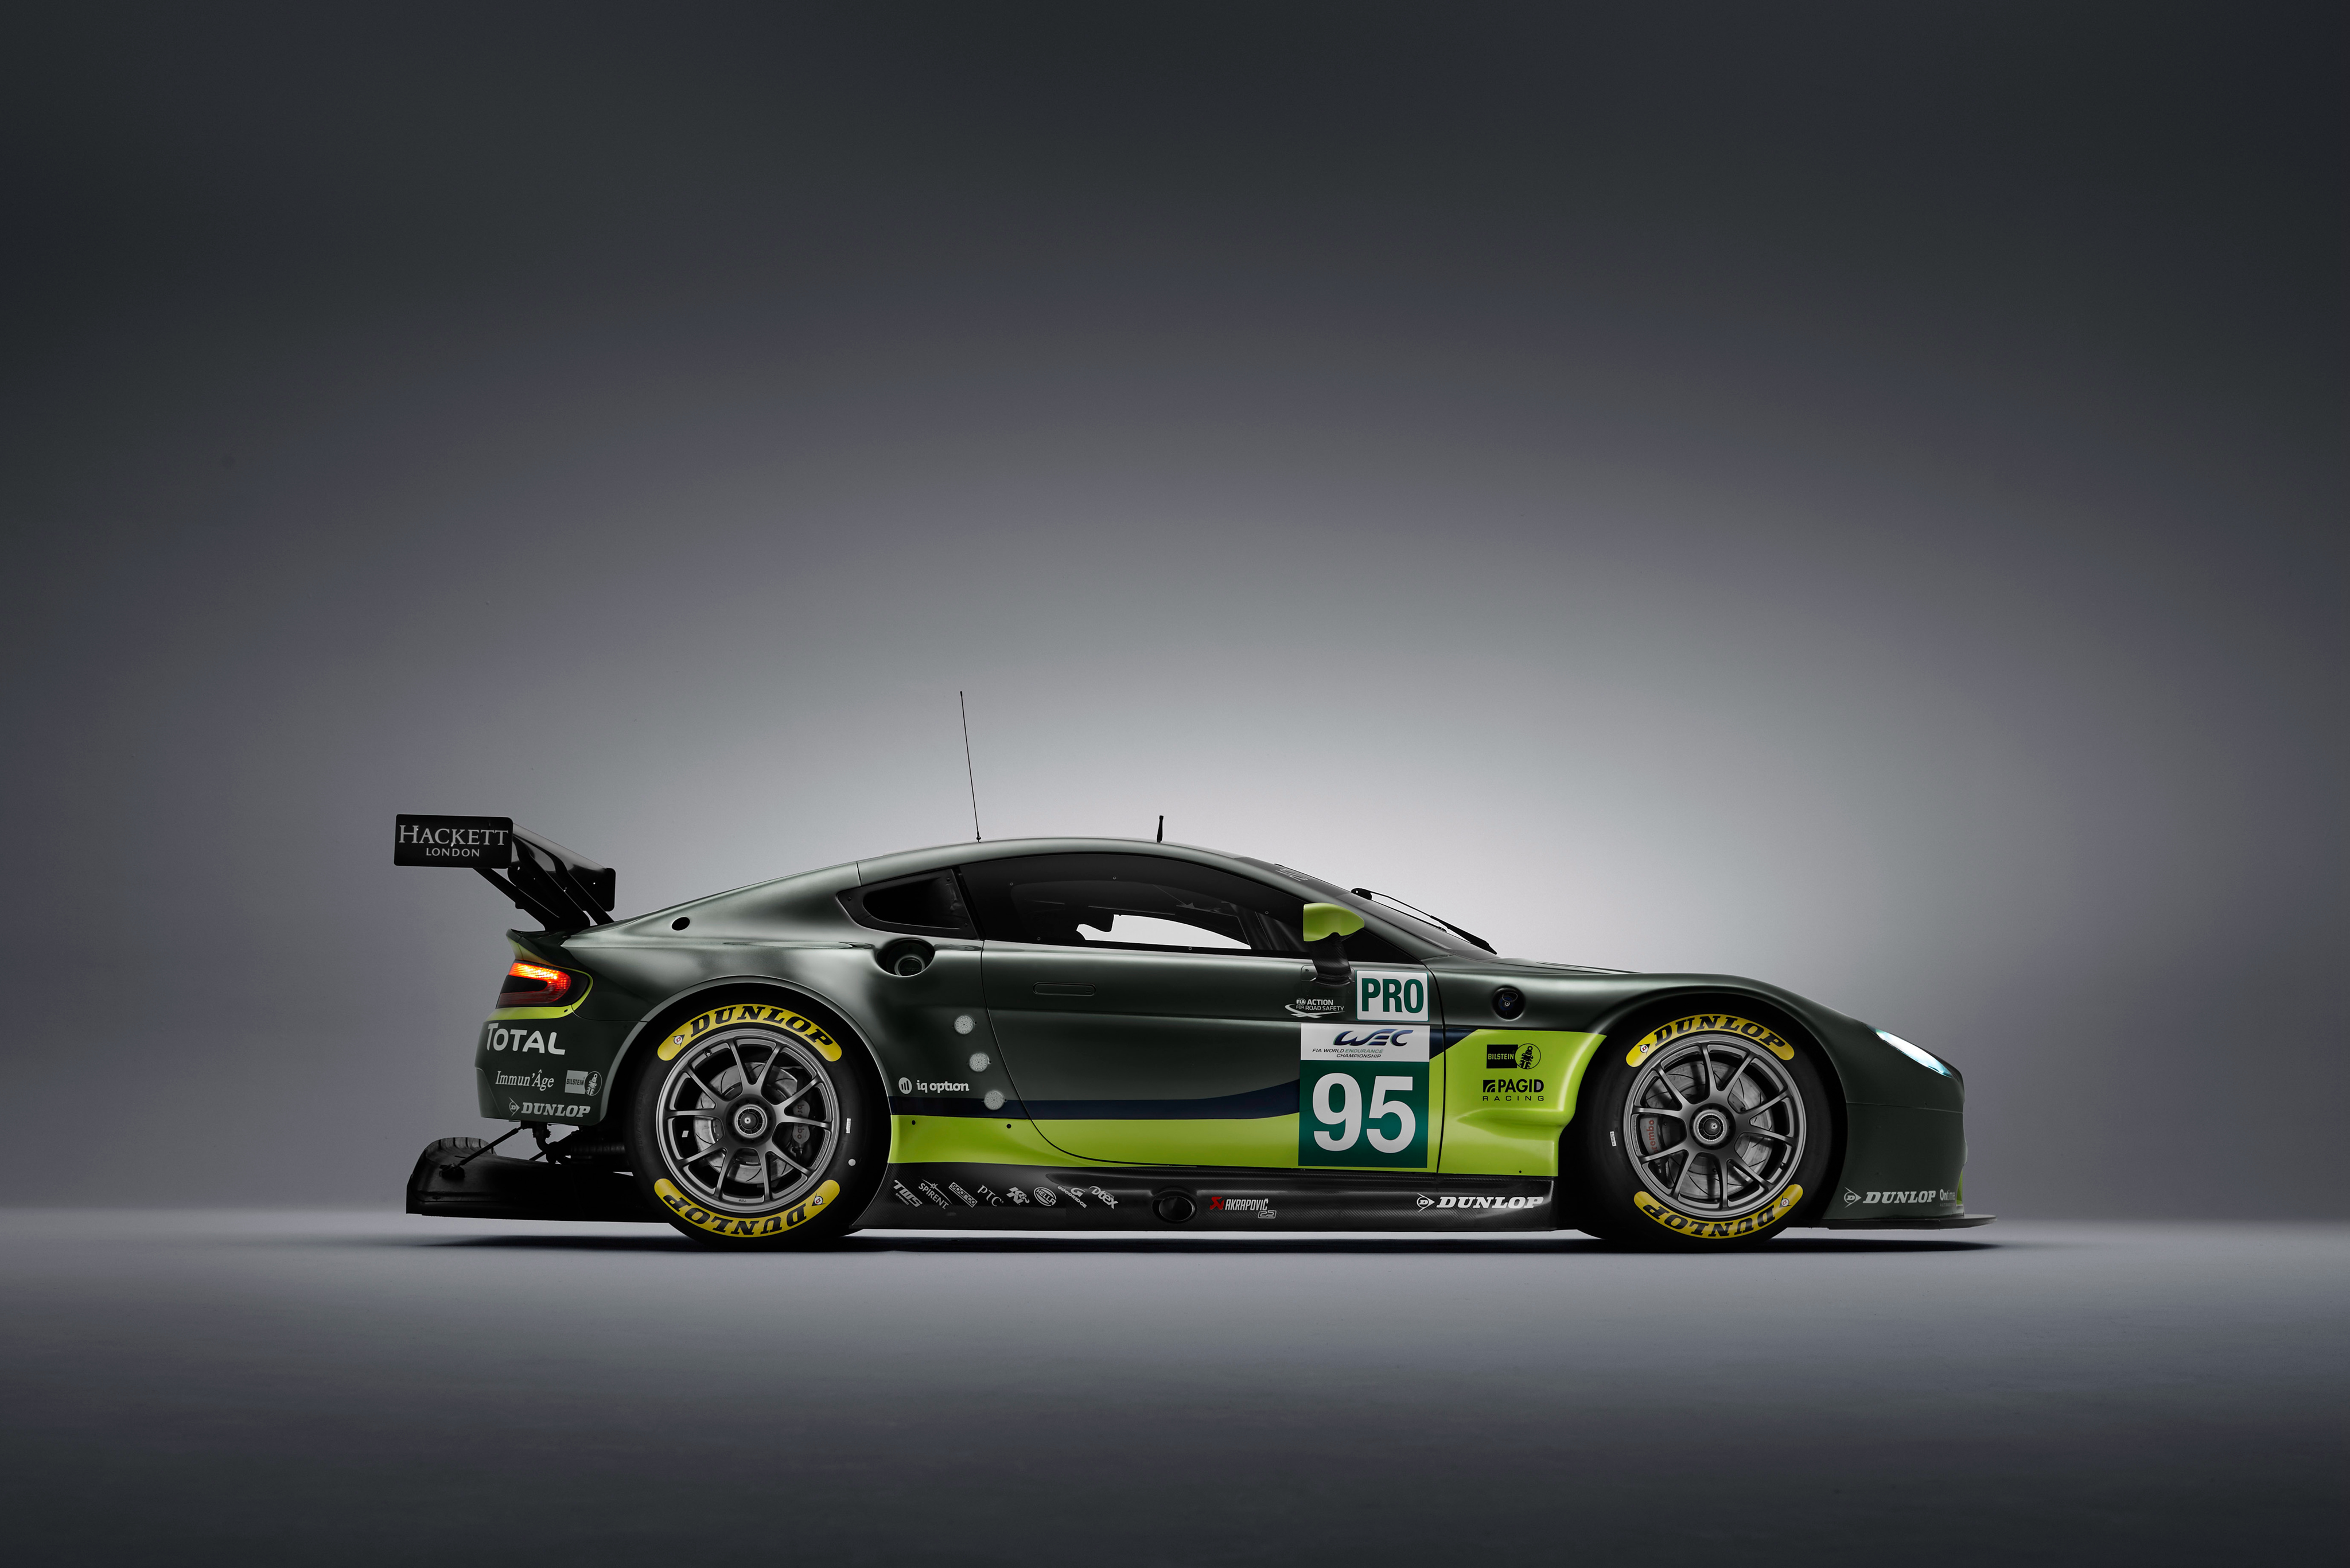 Télécharger des fonds d'écran Aston Martin V8 Vantage Gte HD